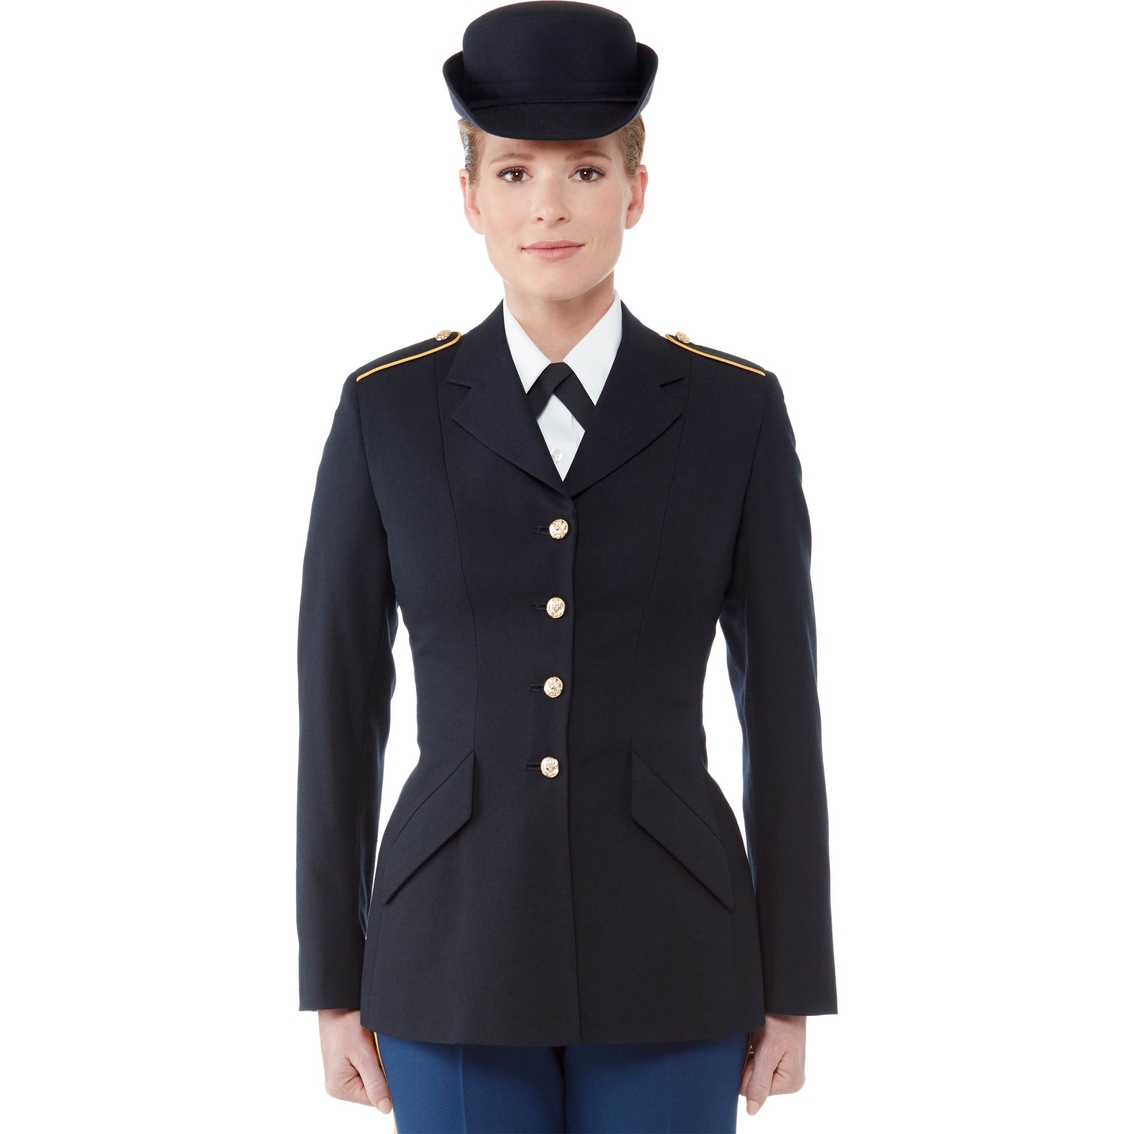 Army Blues Uniform 115